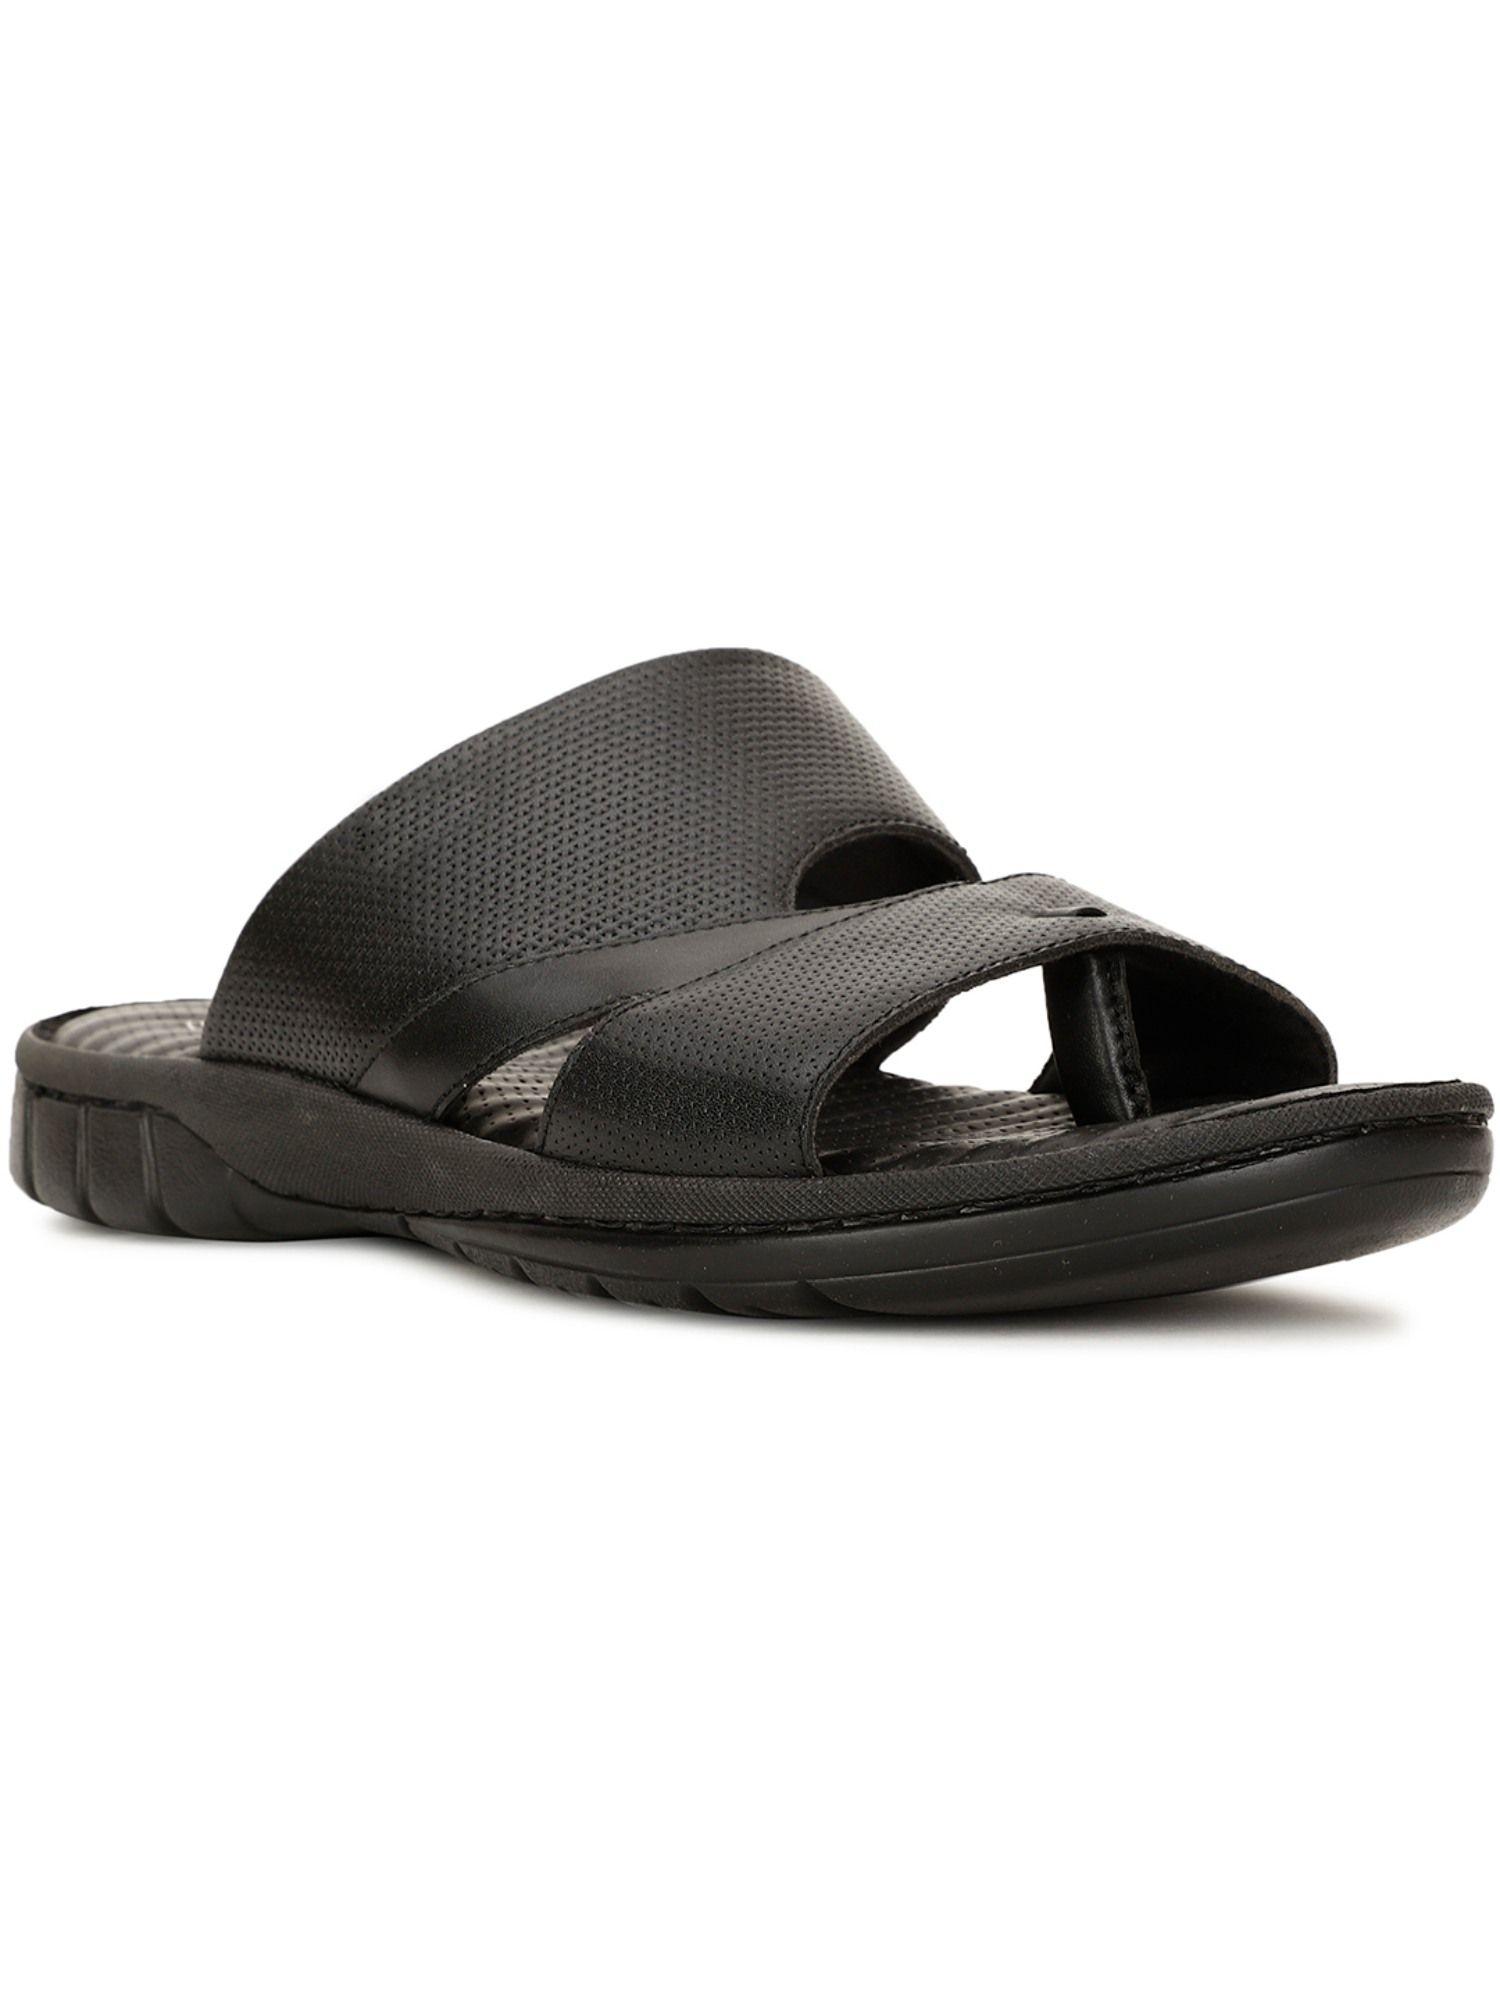 Men Black Slip-On Sandals